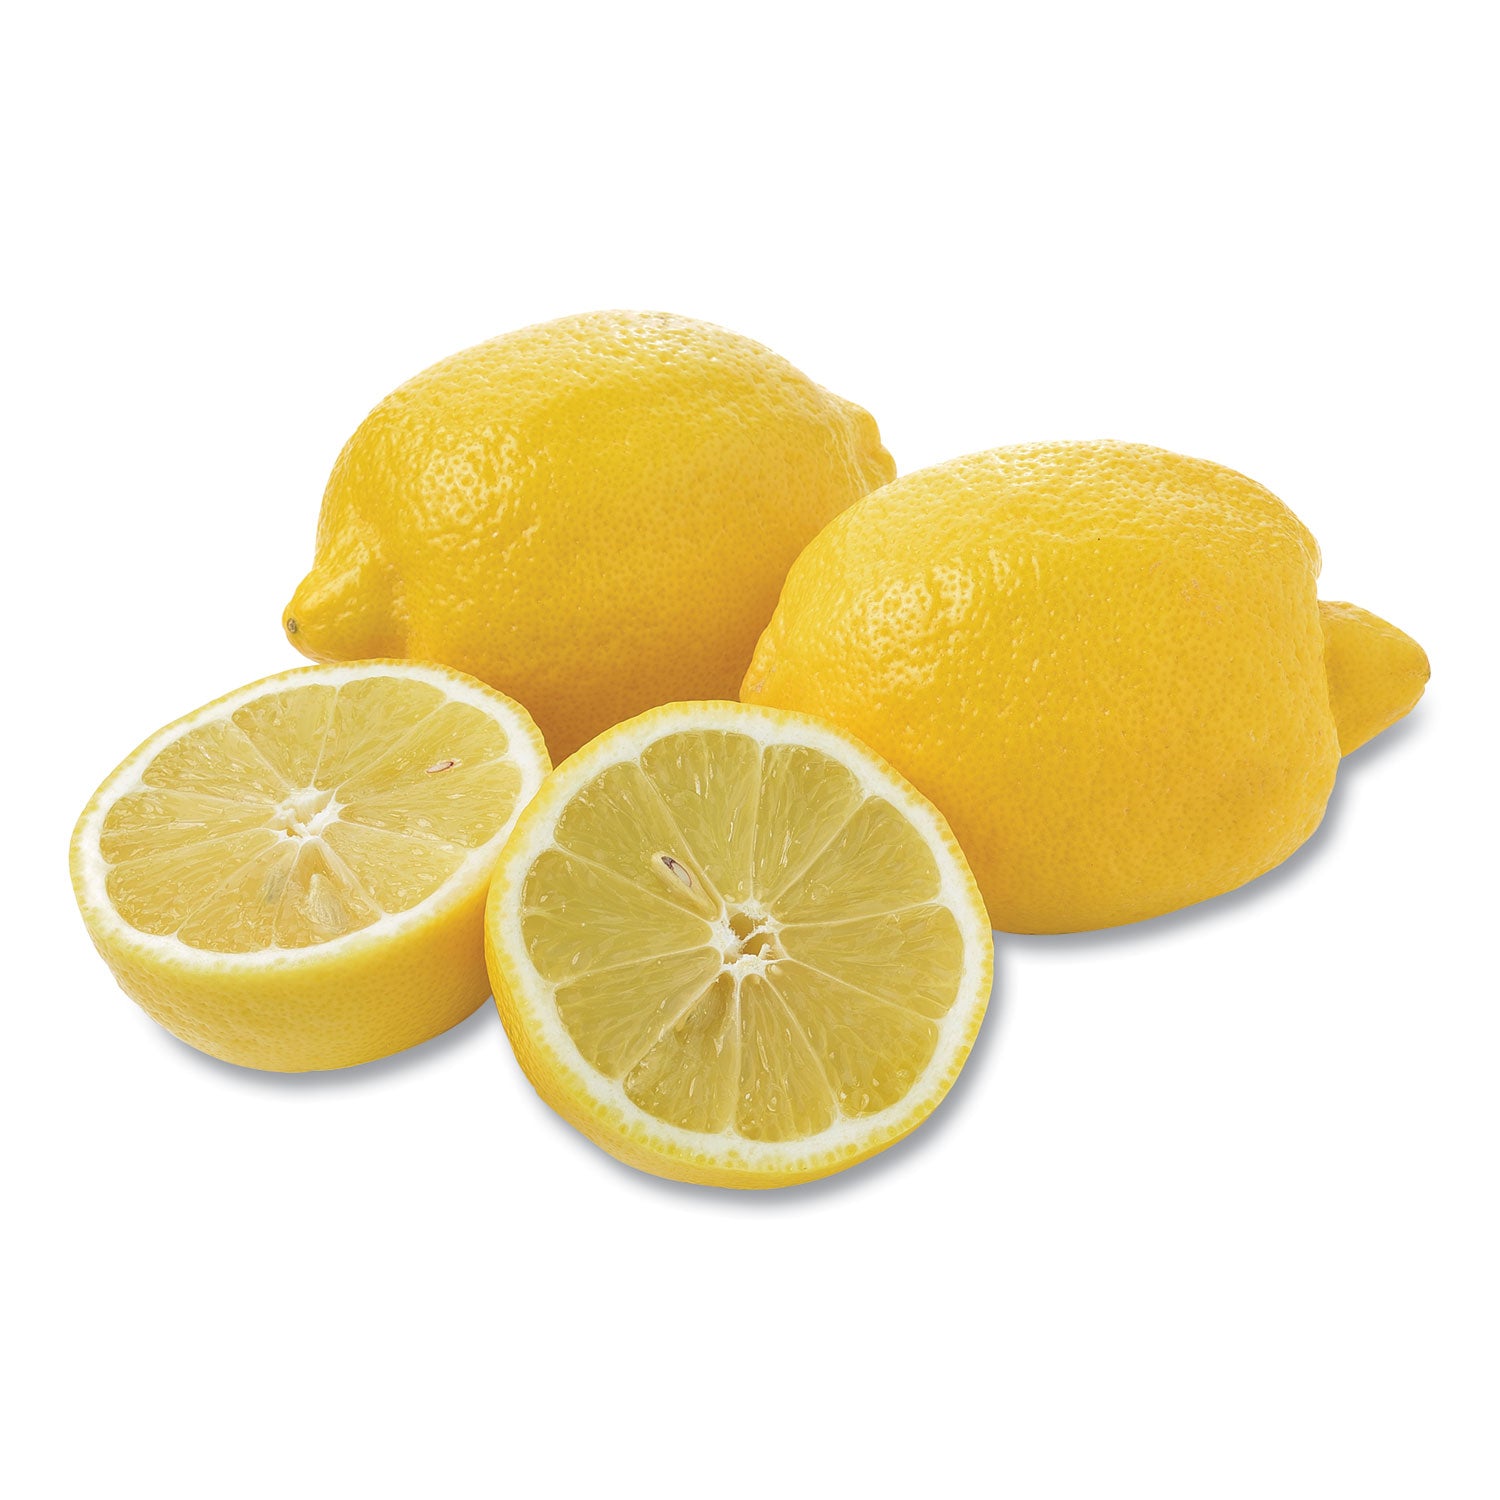 fresh-lemons-3-lbs-ships-in-1-3-business-days_grr90000036 - 1